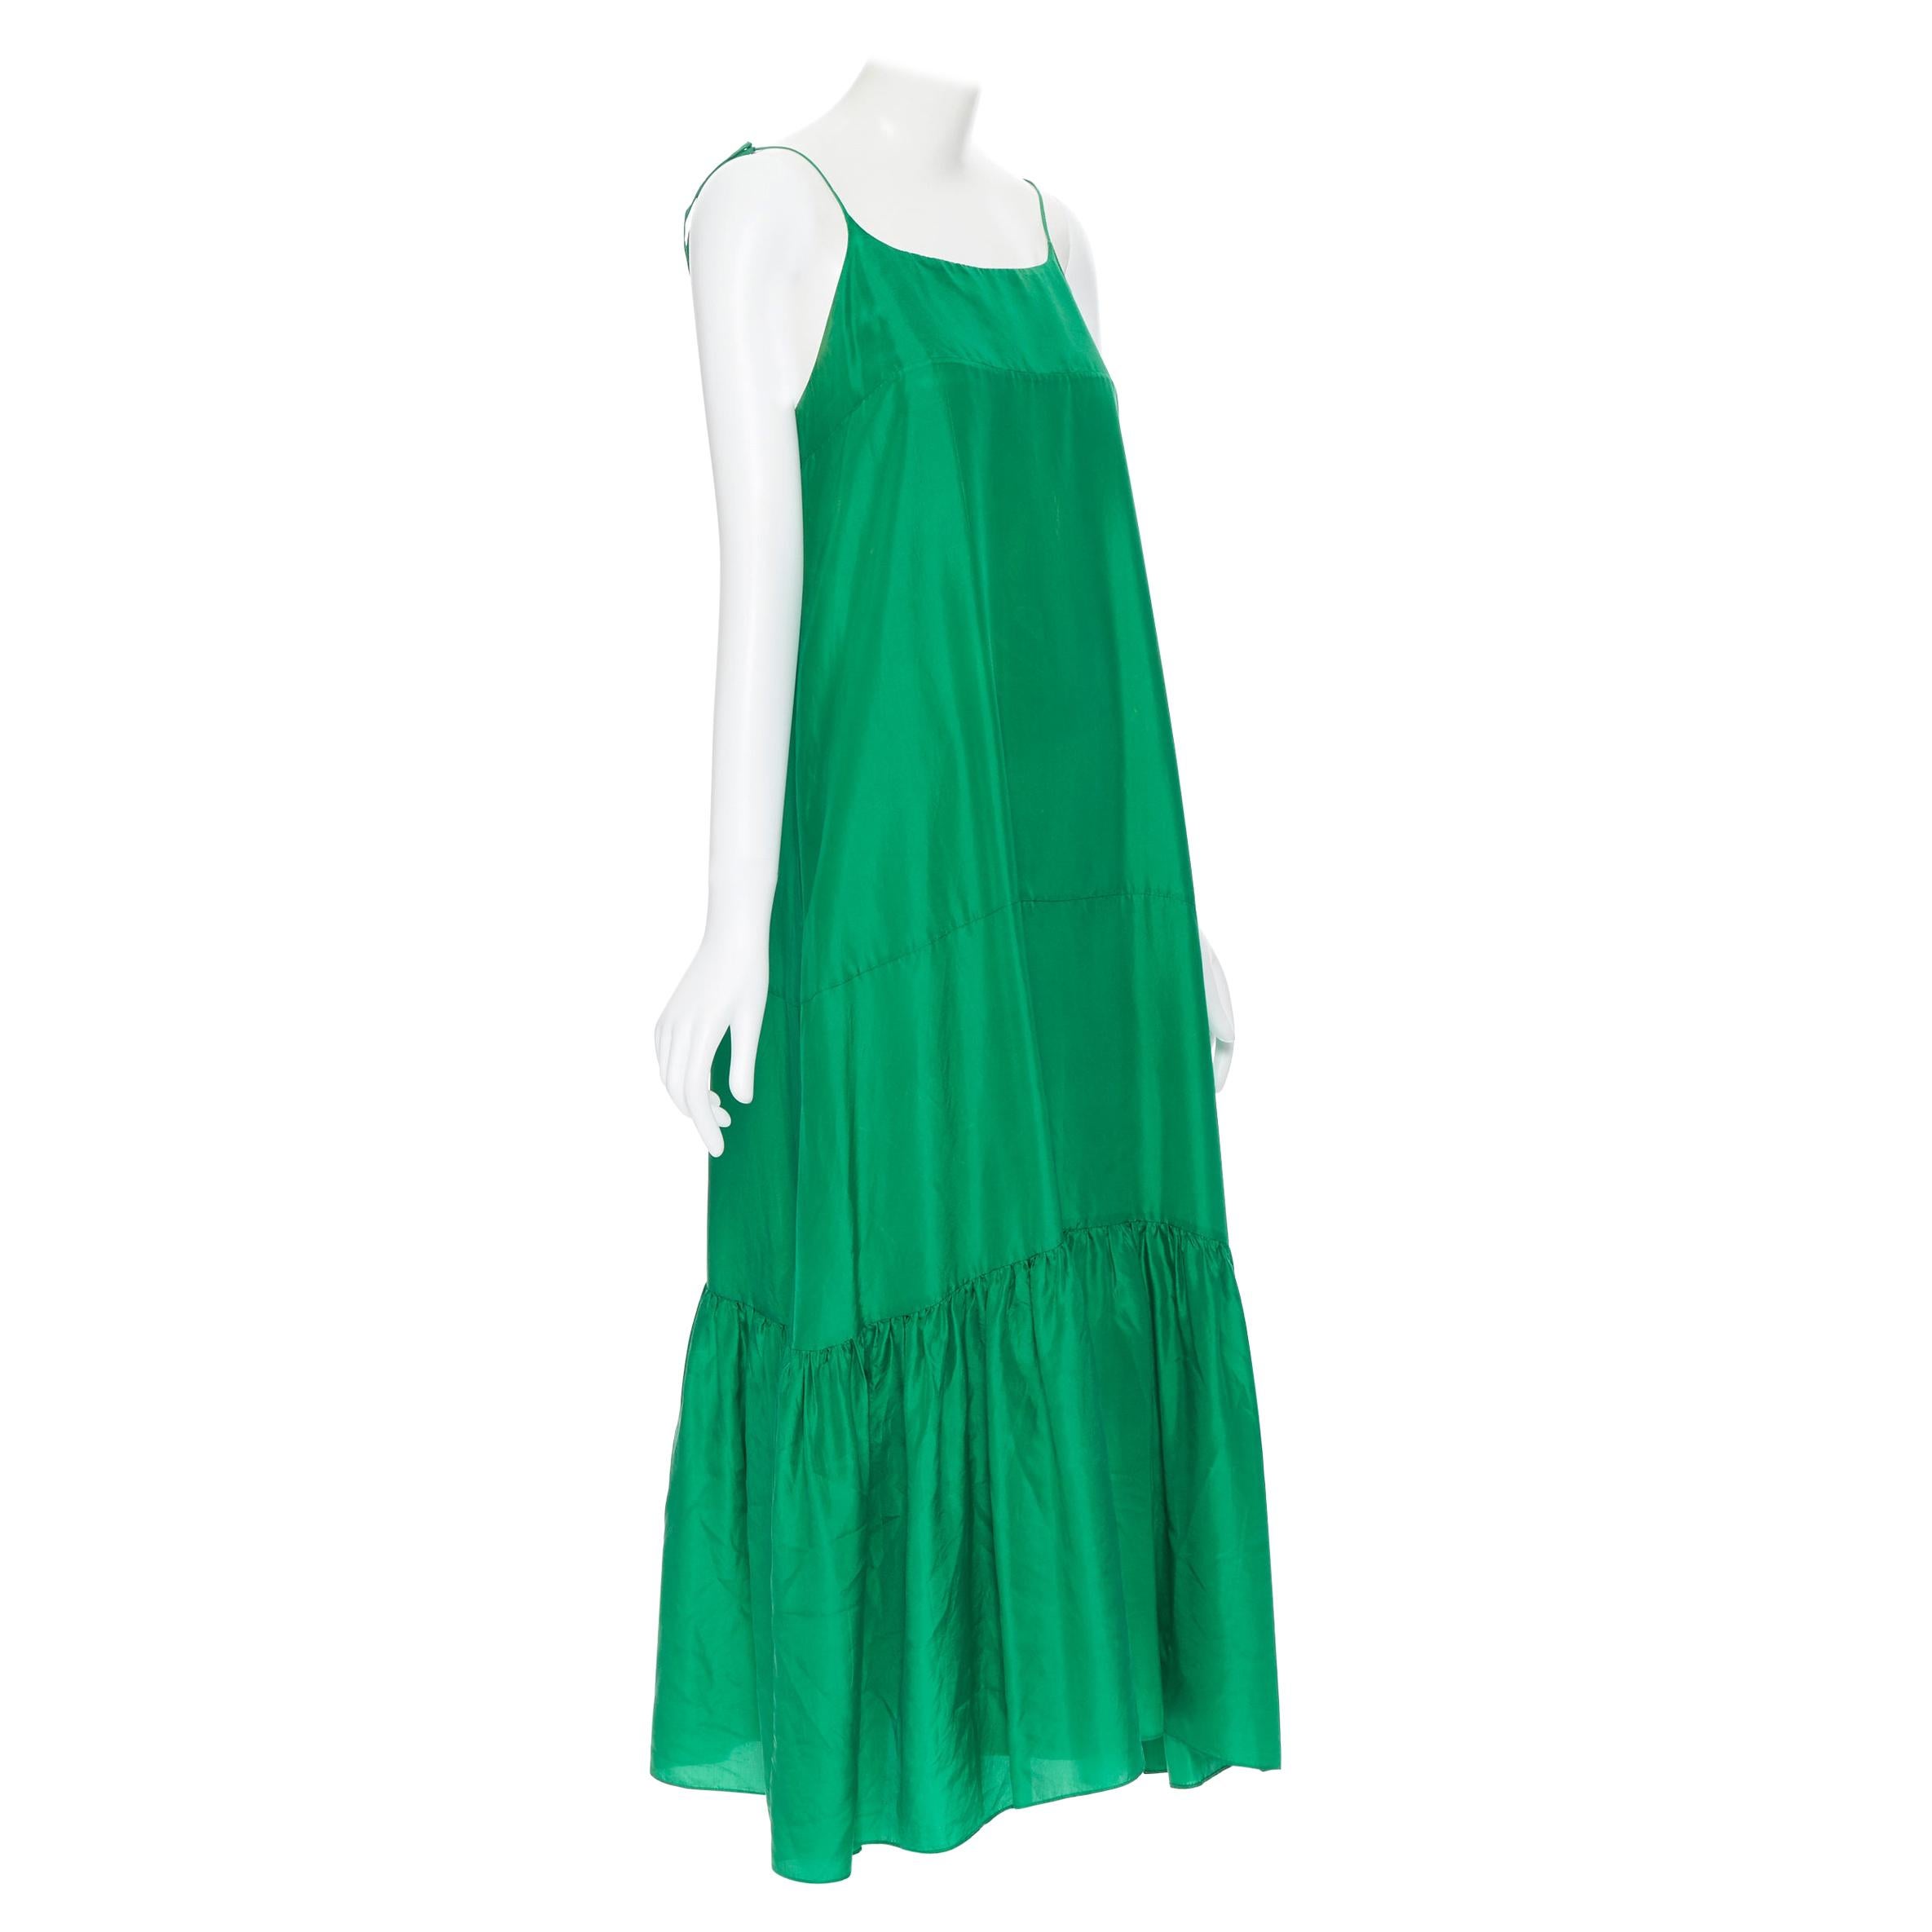 KALITA 100% silk kelly green tiered flared hem tie spaghetti strap maxi dress XS